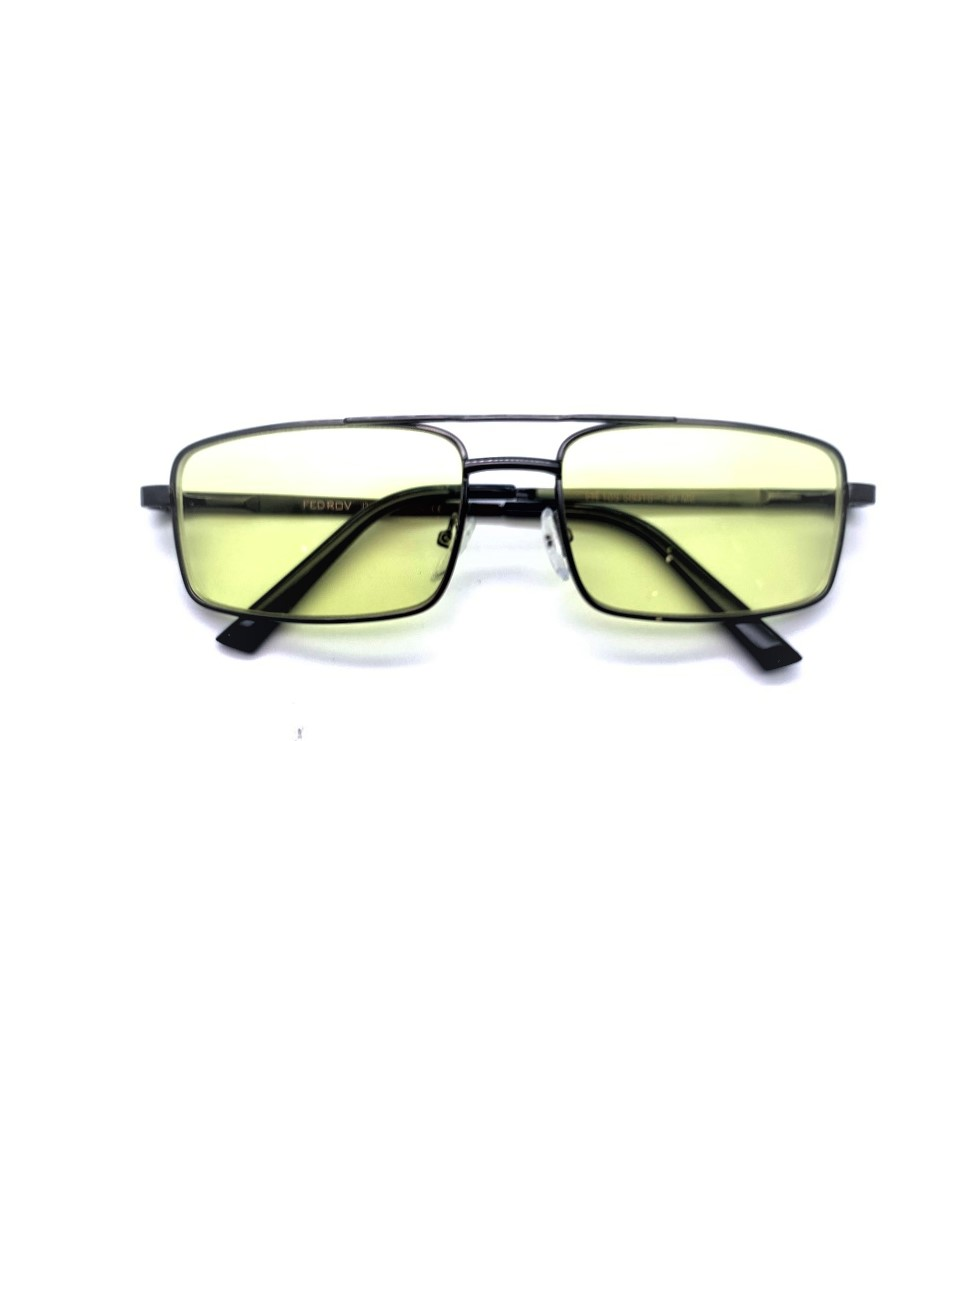 Очки мужские антифары для водителей Хорошие очки! 087-1.5 - купить в интернет-магазинах, цены на Мегамаркет | корригирующие очки 087-1.5